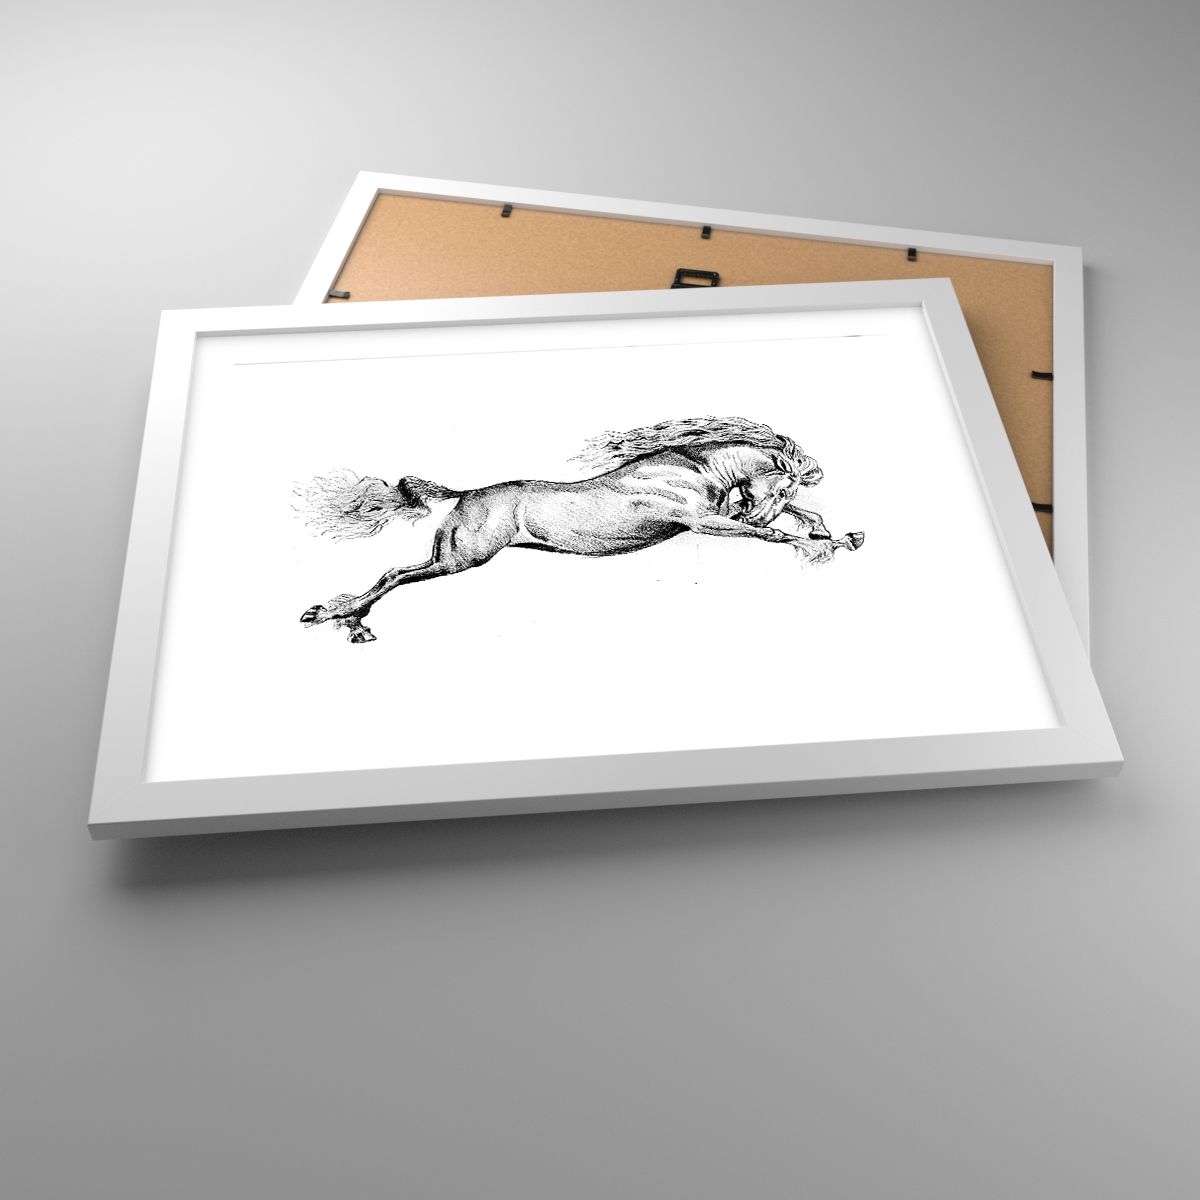 Poster Cavallo, Poster Animali, Poster Grafica, Poster Bianco E Nero, Poster Salto